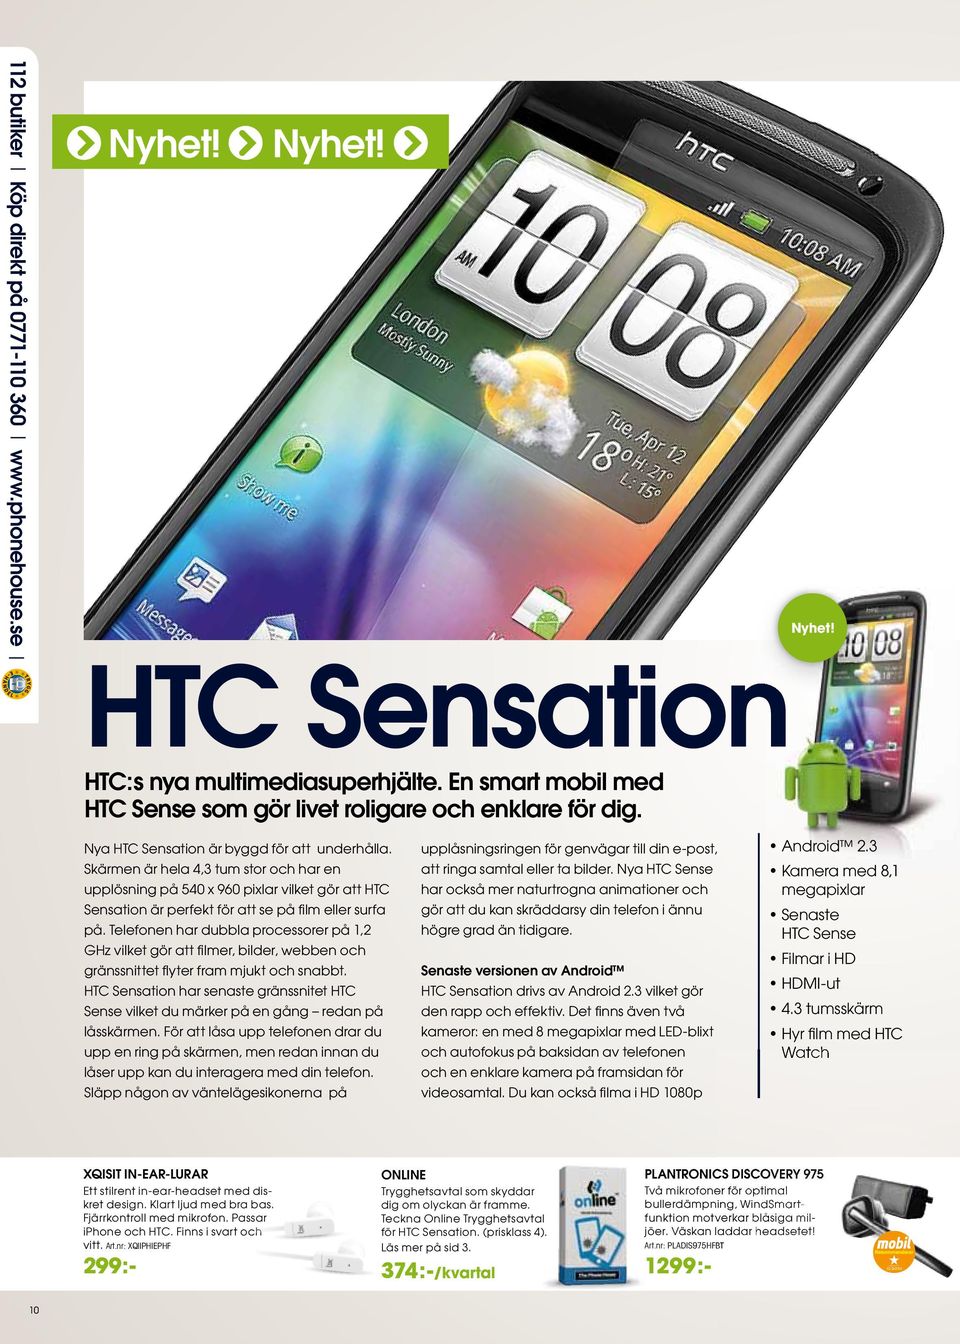 Skärmen är hela 4,3 tum stor och har en upplösning på 540 x 960 pixlar vilket gör att HTC Sensation är perfekt för att se på fi lm eller surfa på.